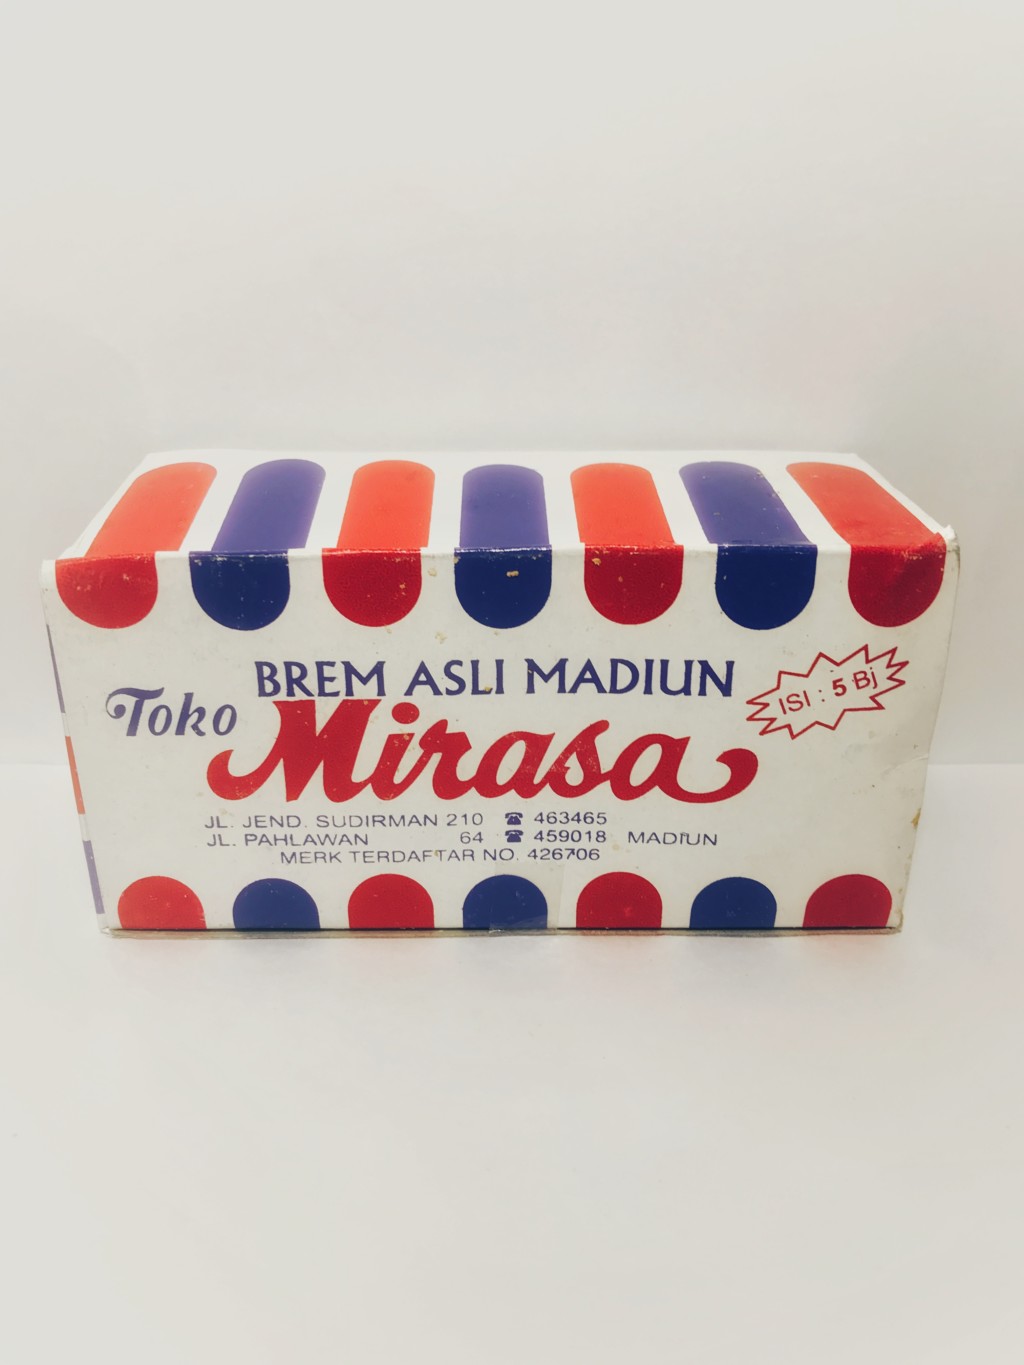 インドネシアの甘酒菓子でMirasaの『BREM ASLI MADIUN』